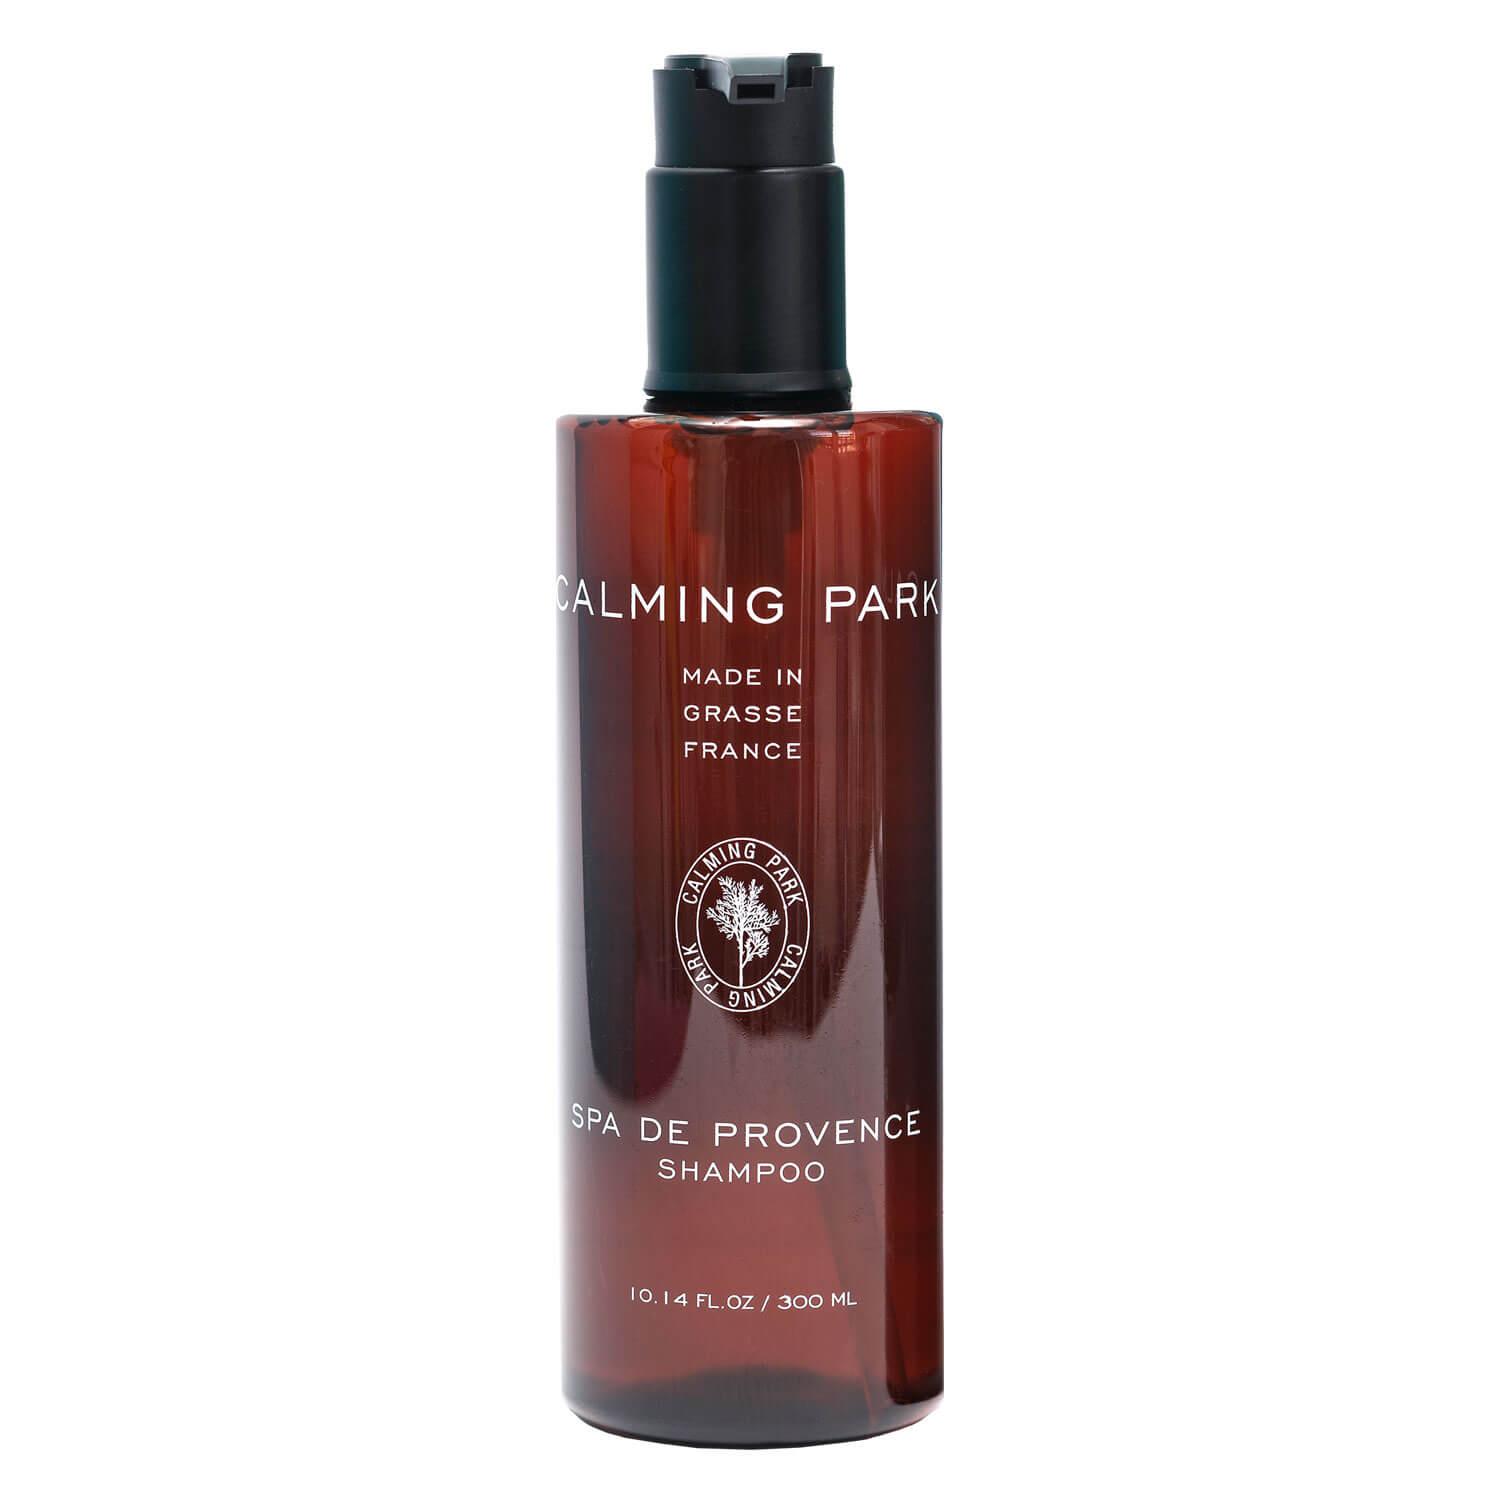 Calming Park - Spa De Provence Shampoo